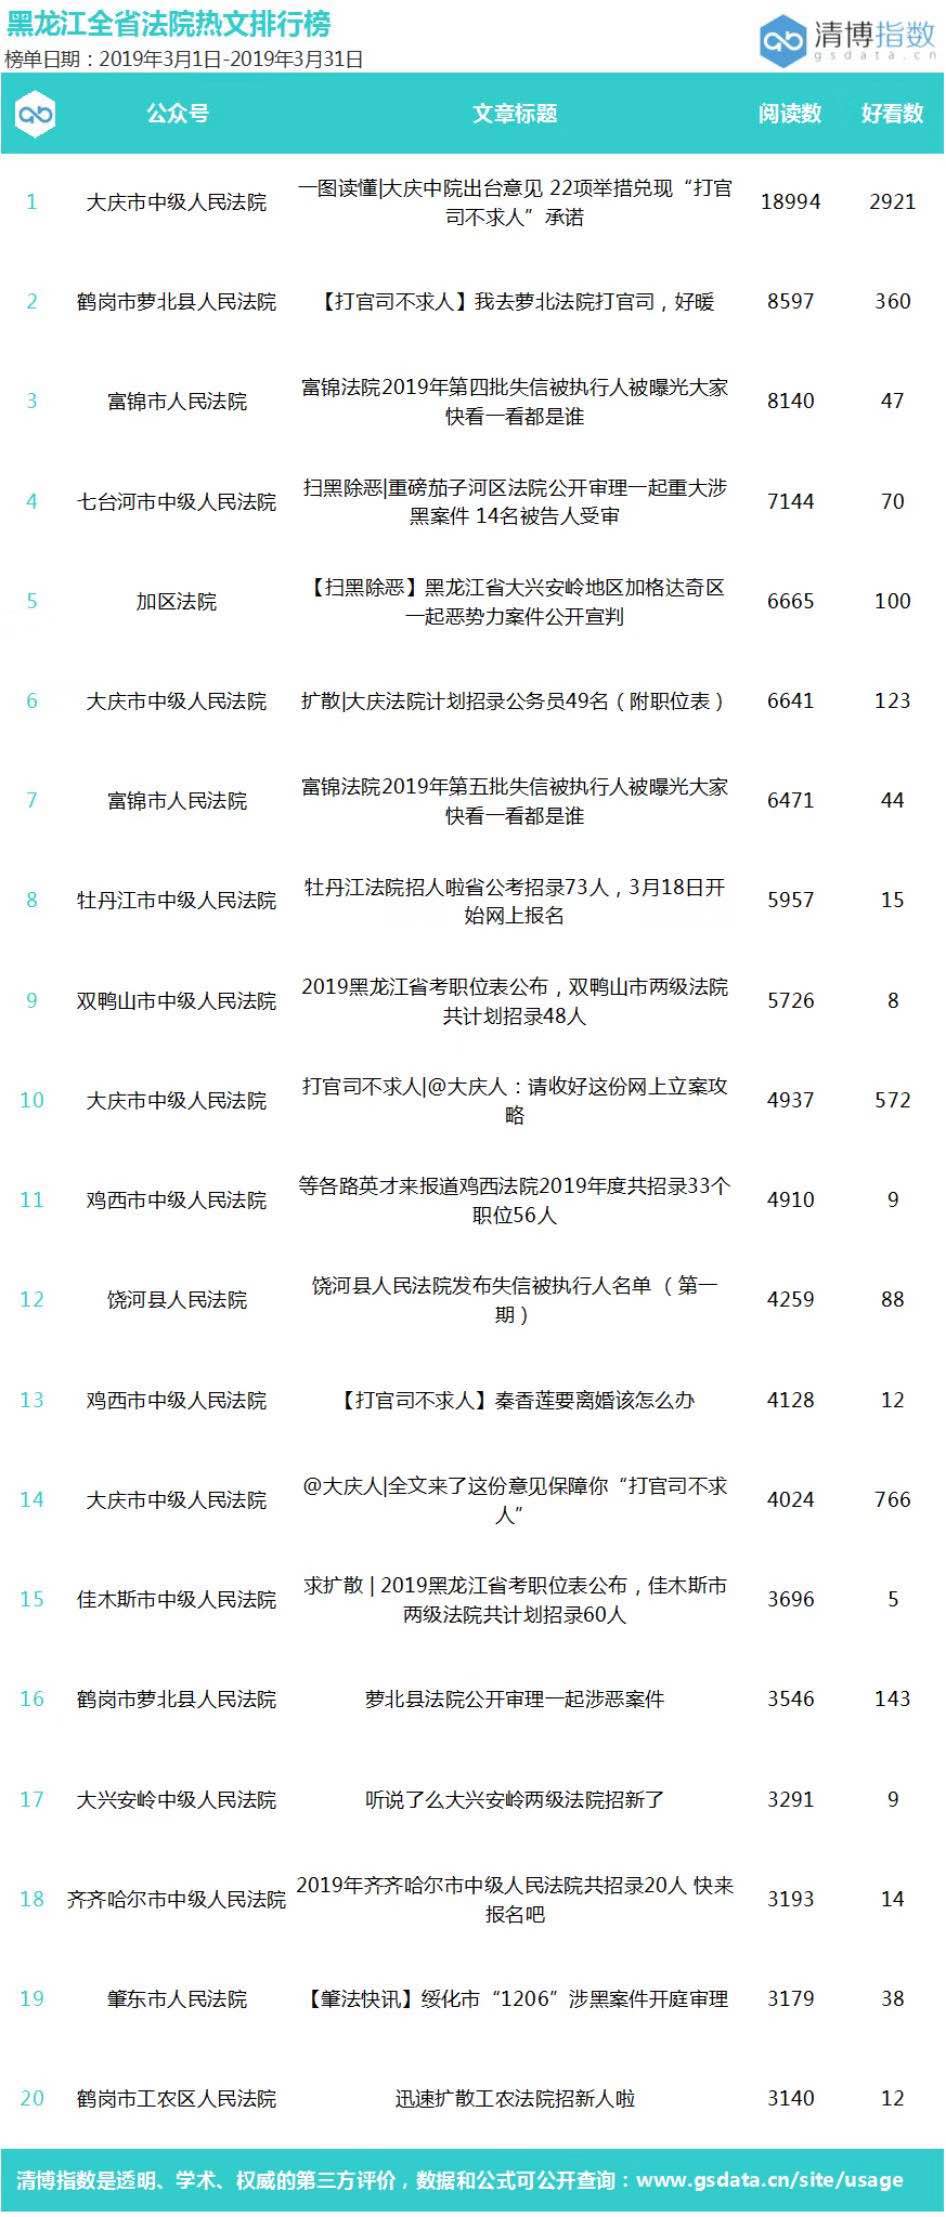 2019xp系统下载排行_榜单第3期|黑龙江法院系统官方微信2019年3月排行榜发